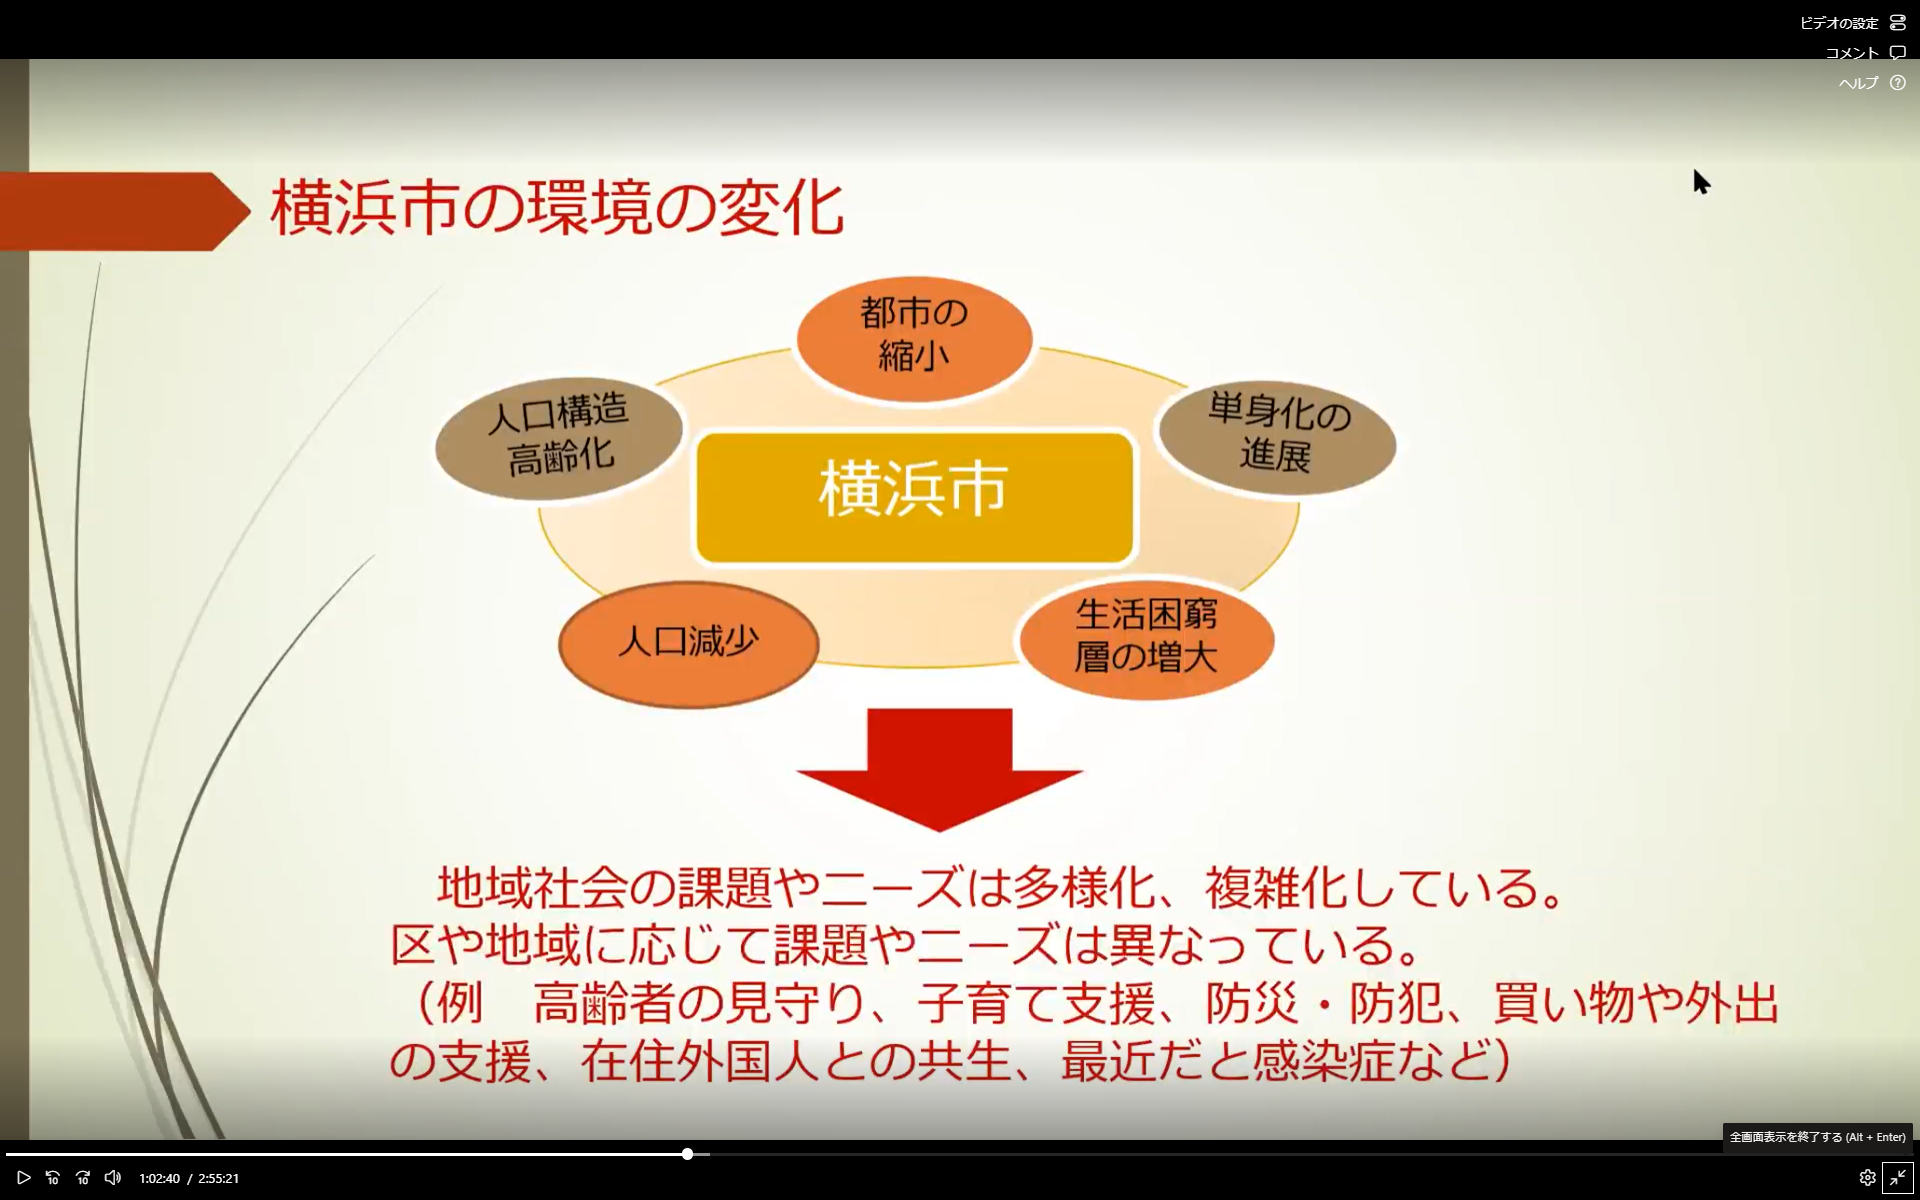 協働の効果についてのスライド